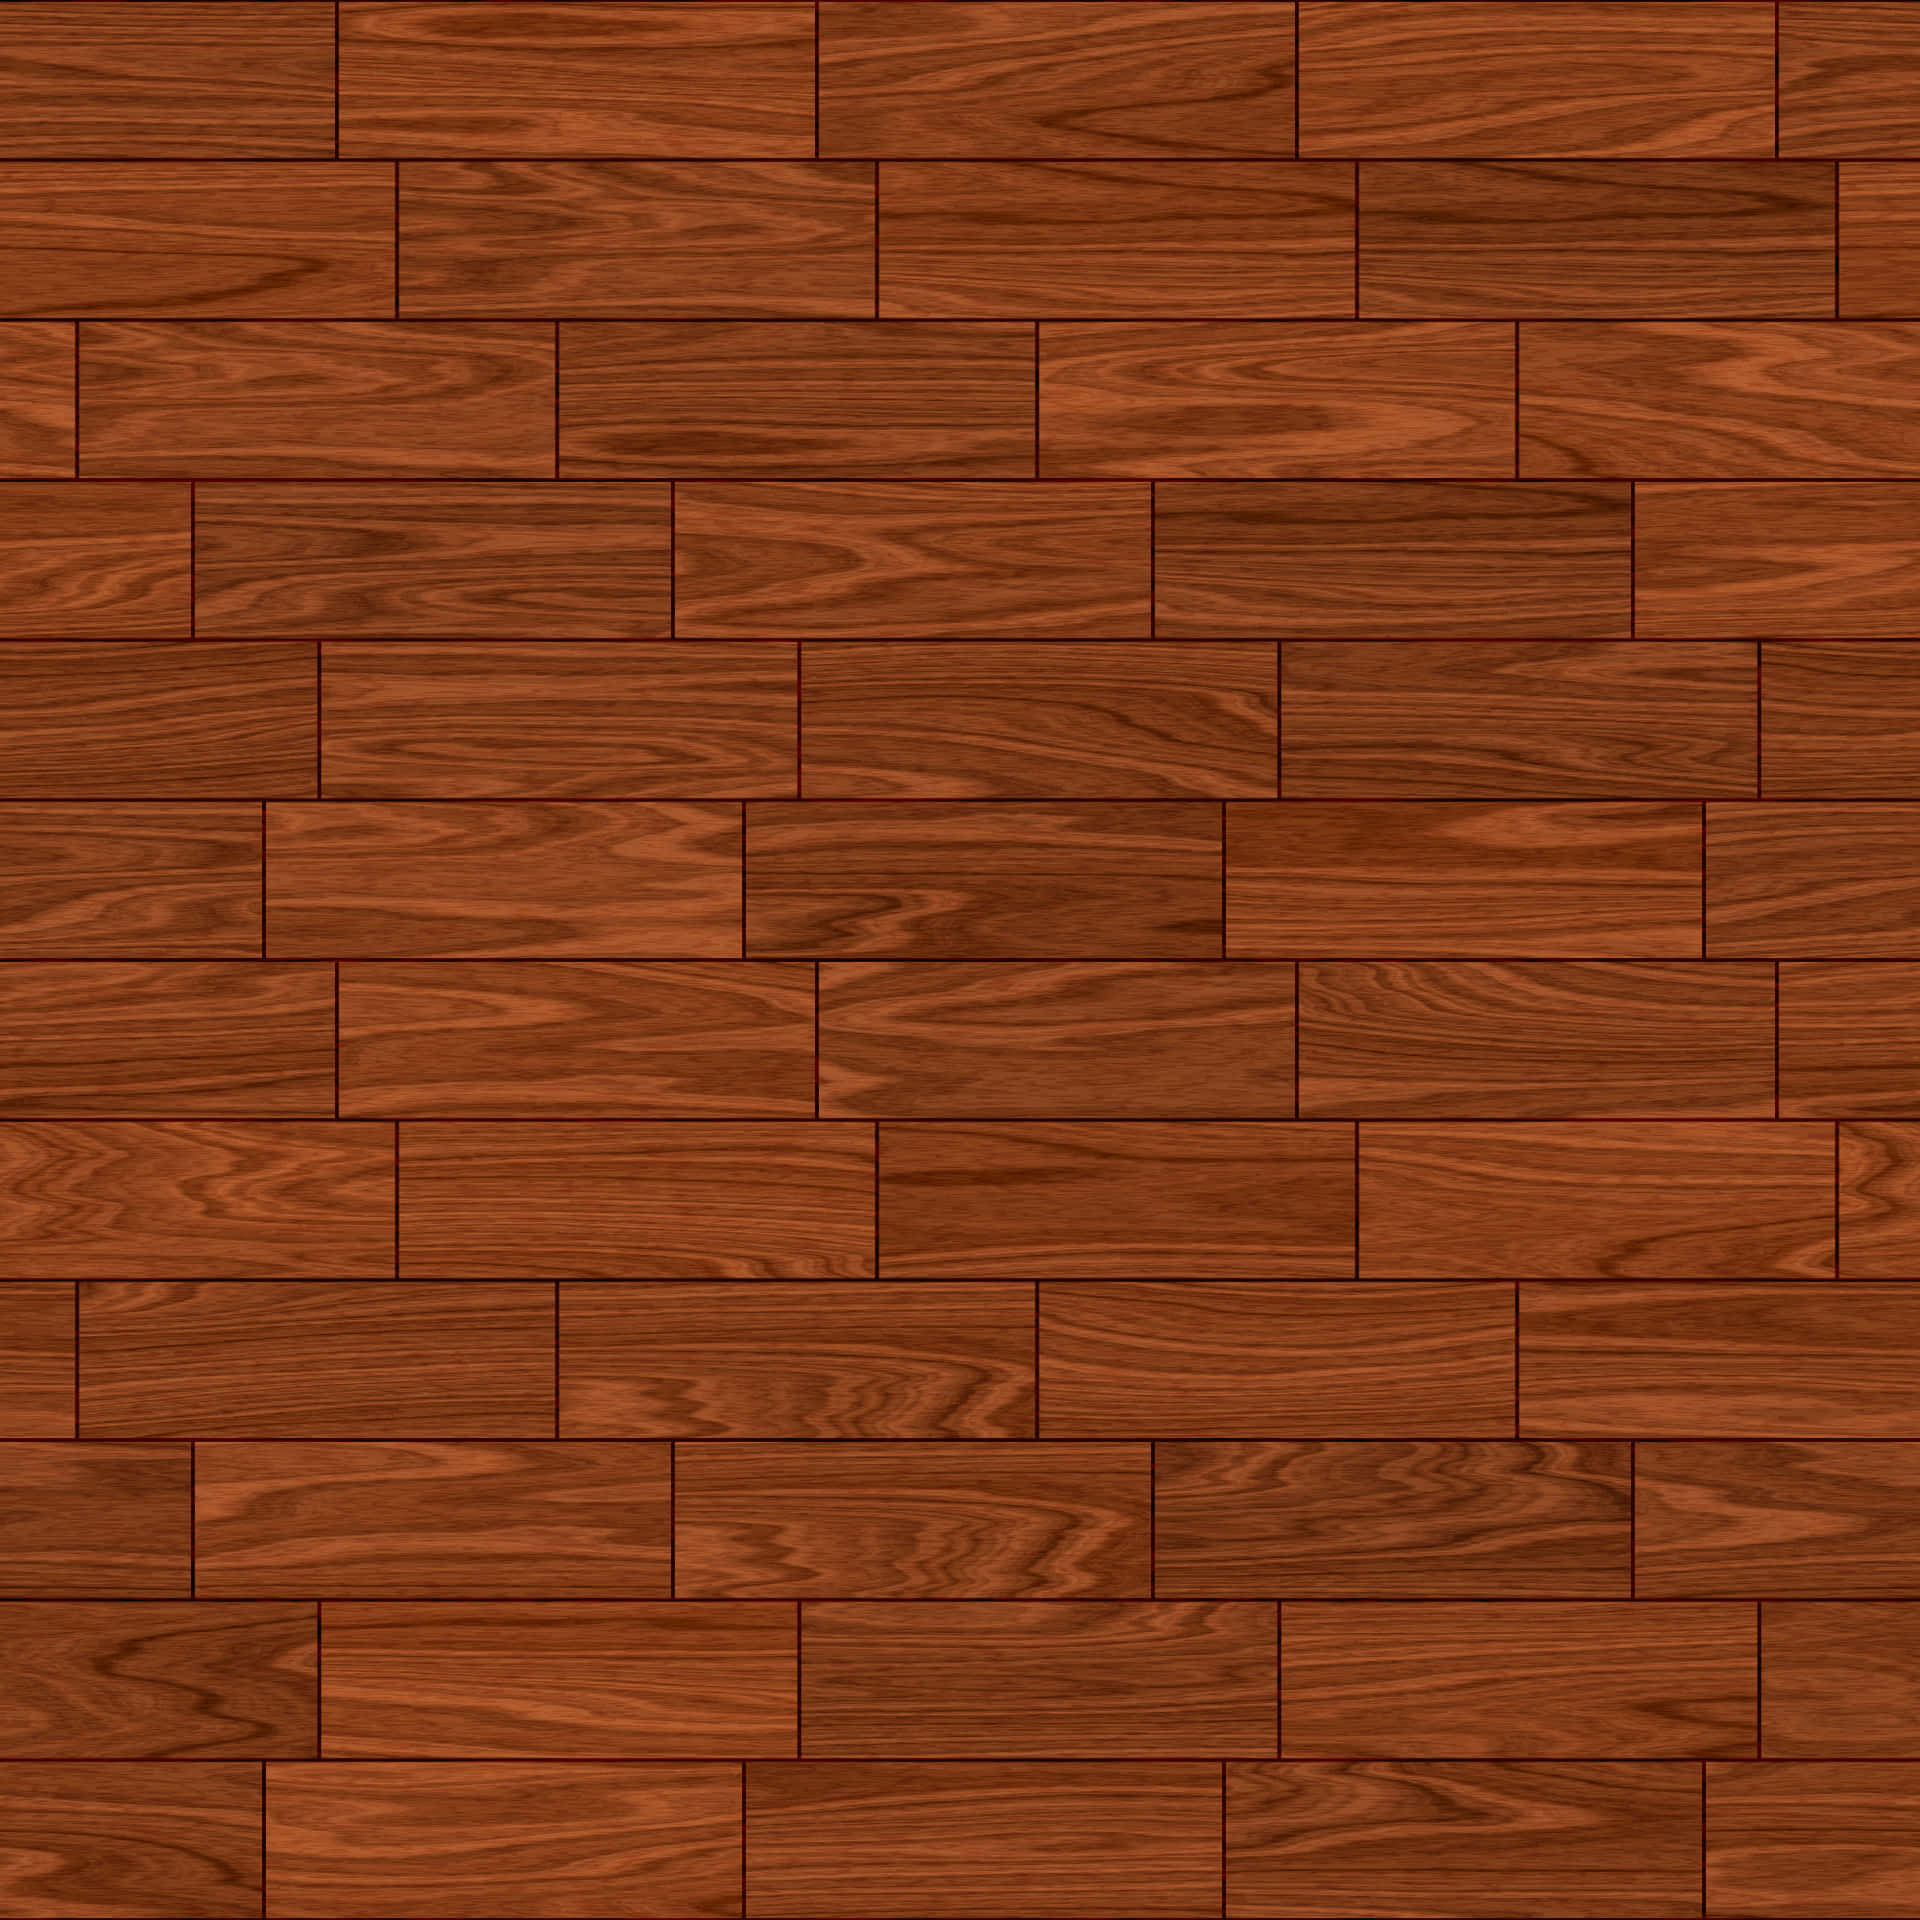 Wood Floor Texture - Stock Vector